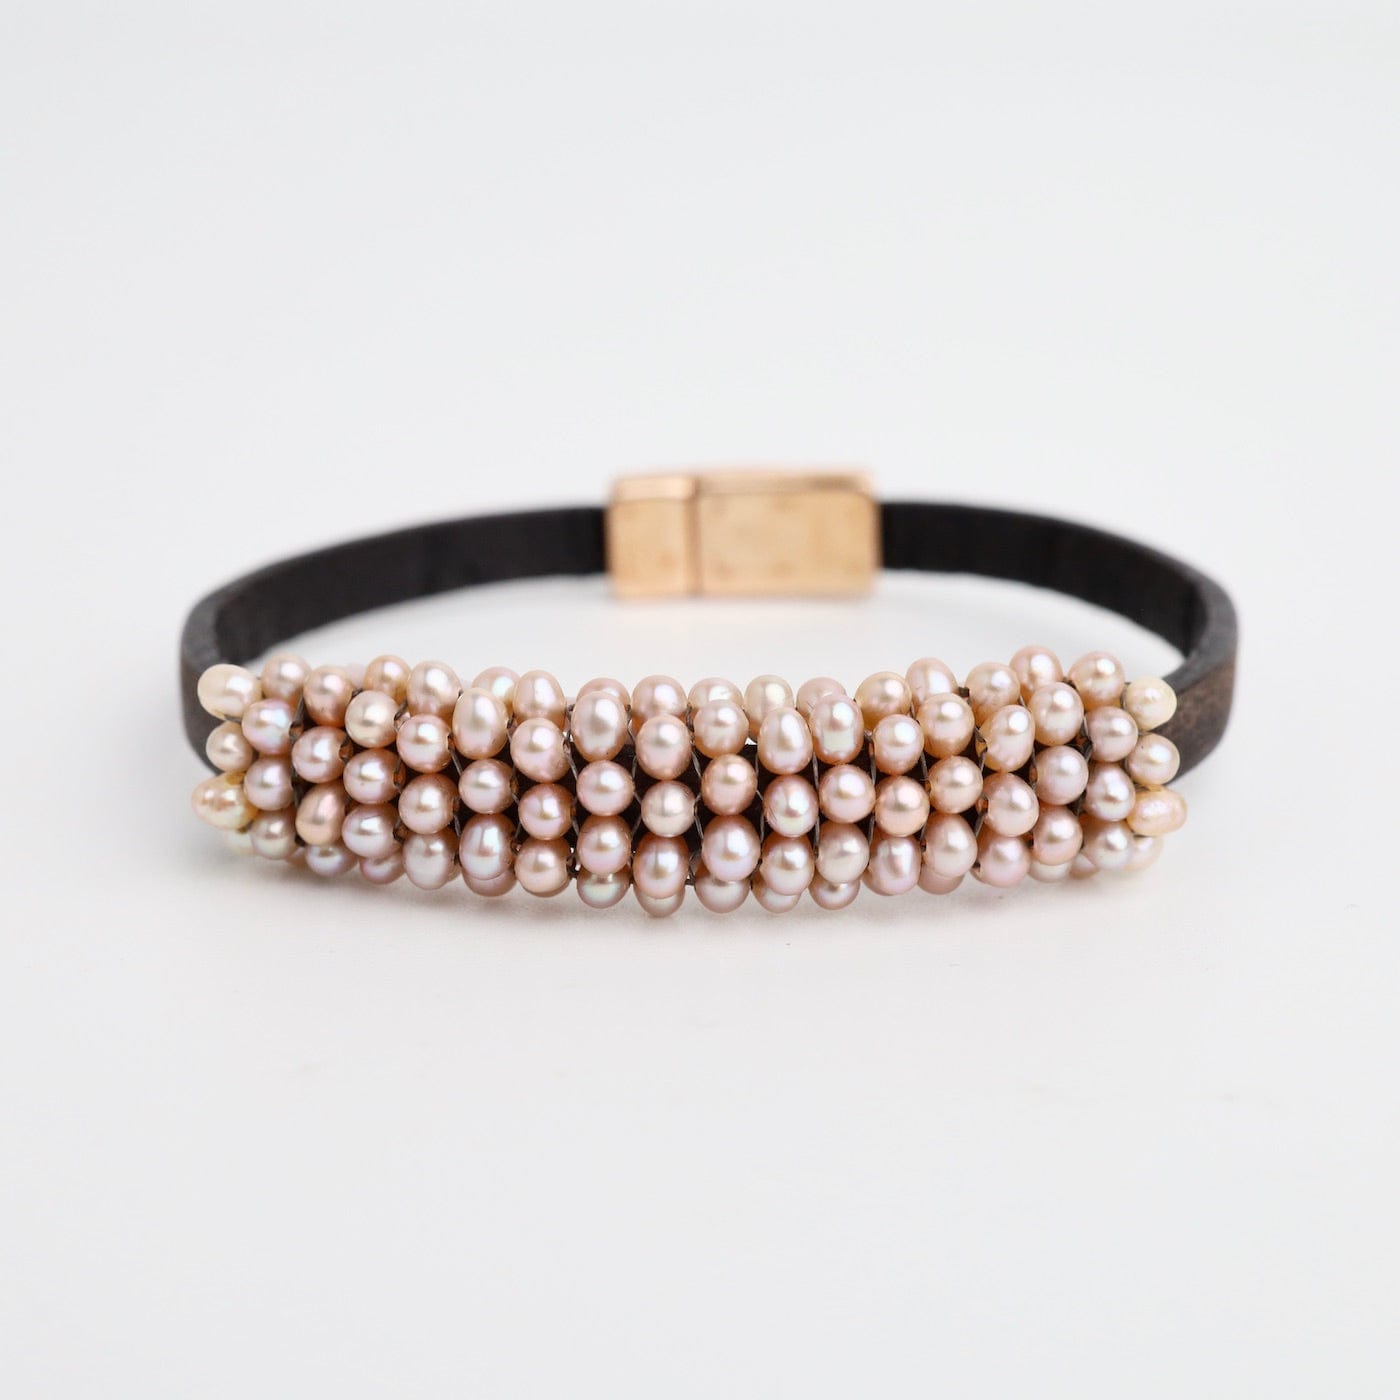 BRC-JM Hand Stitched Pink Pearls On Vintage Black Leather Bracelet